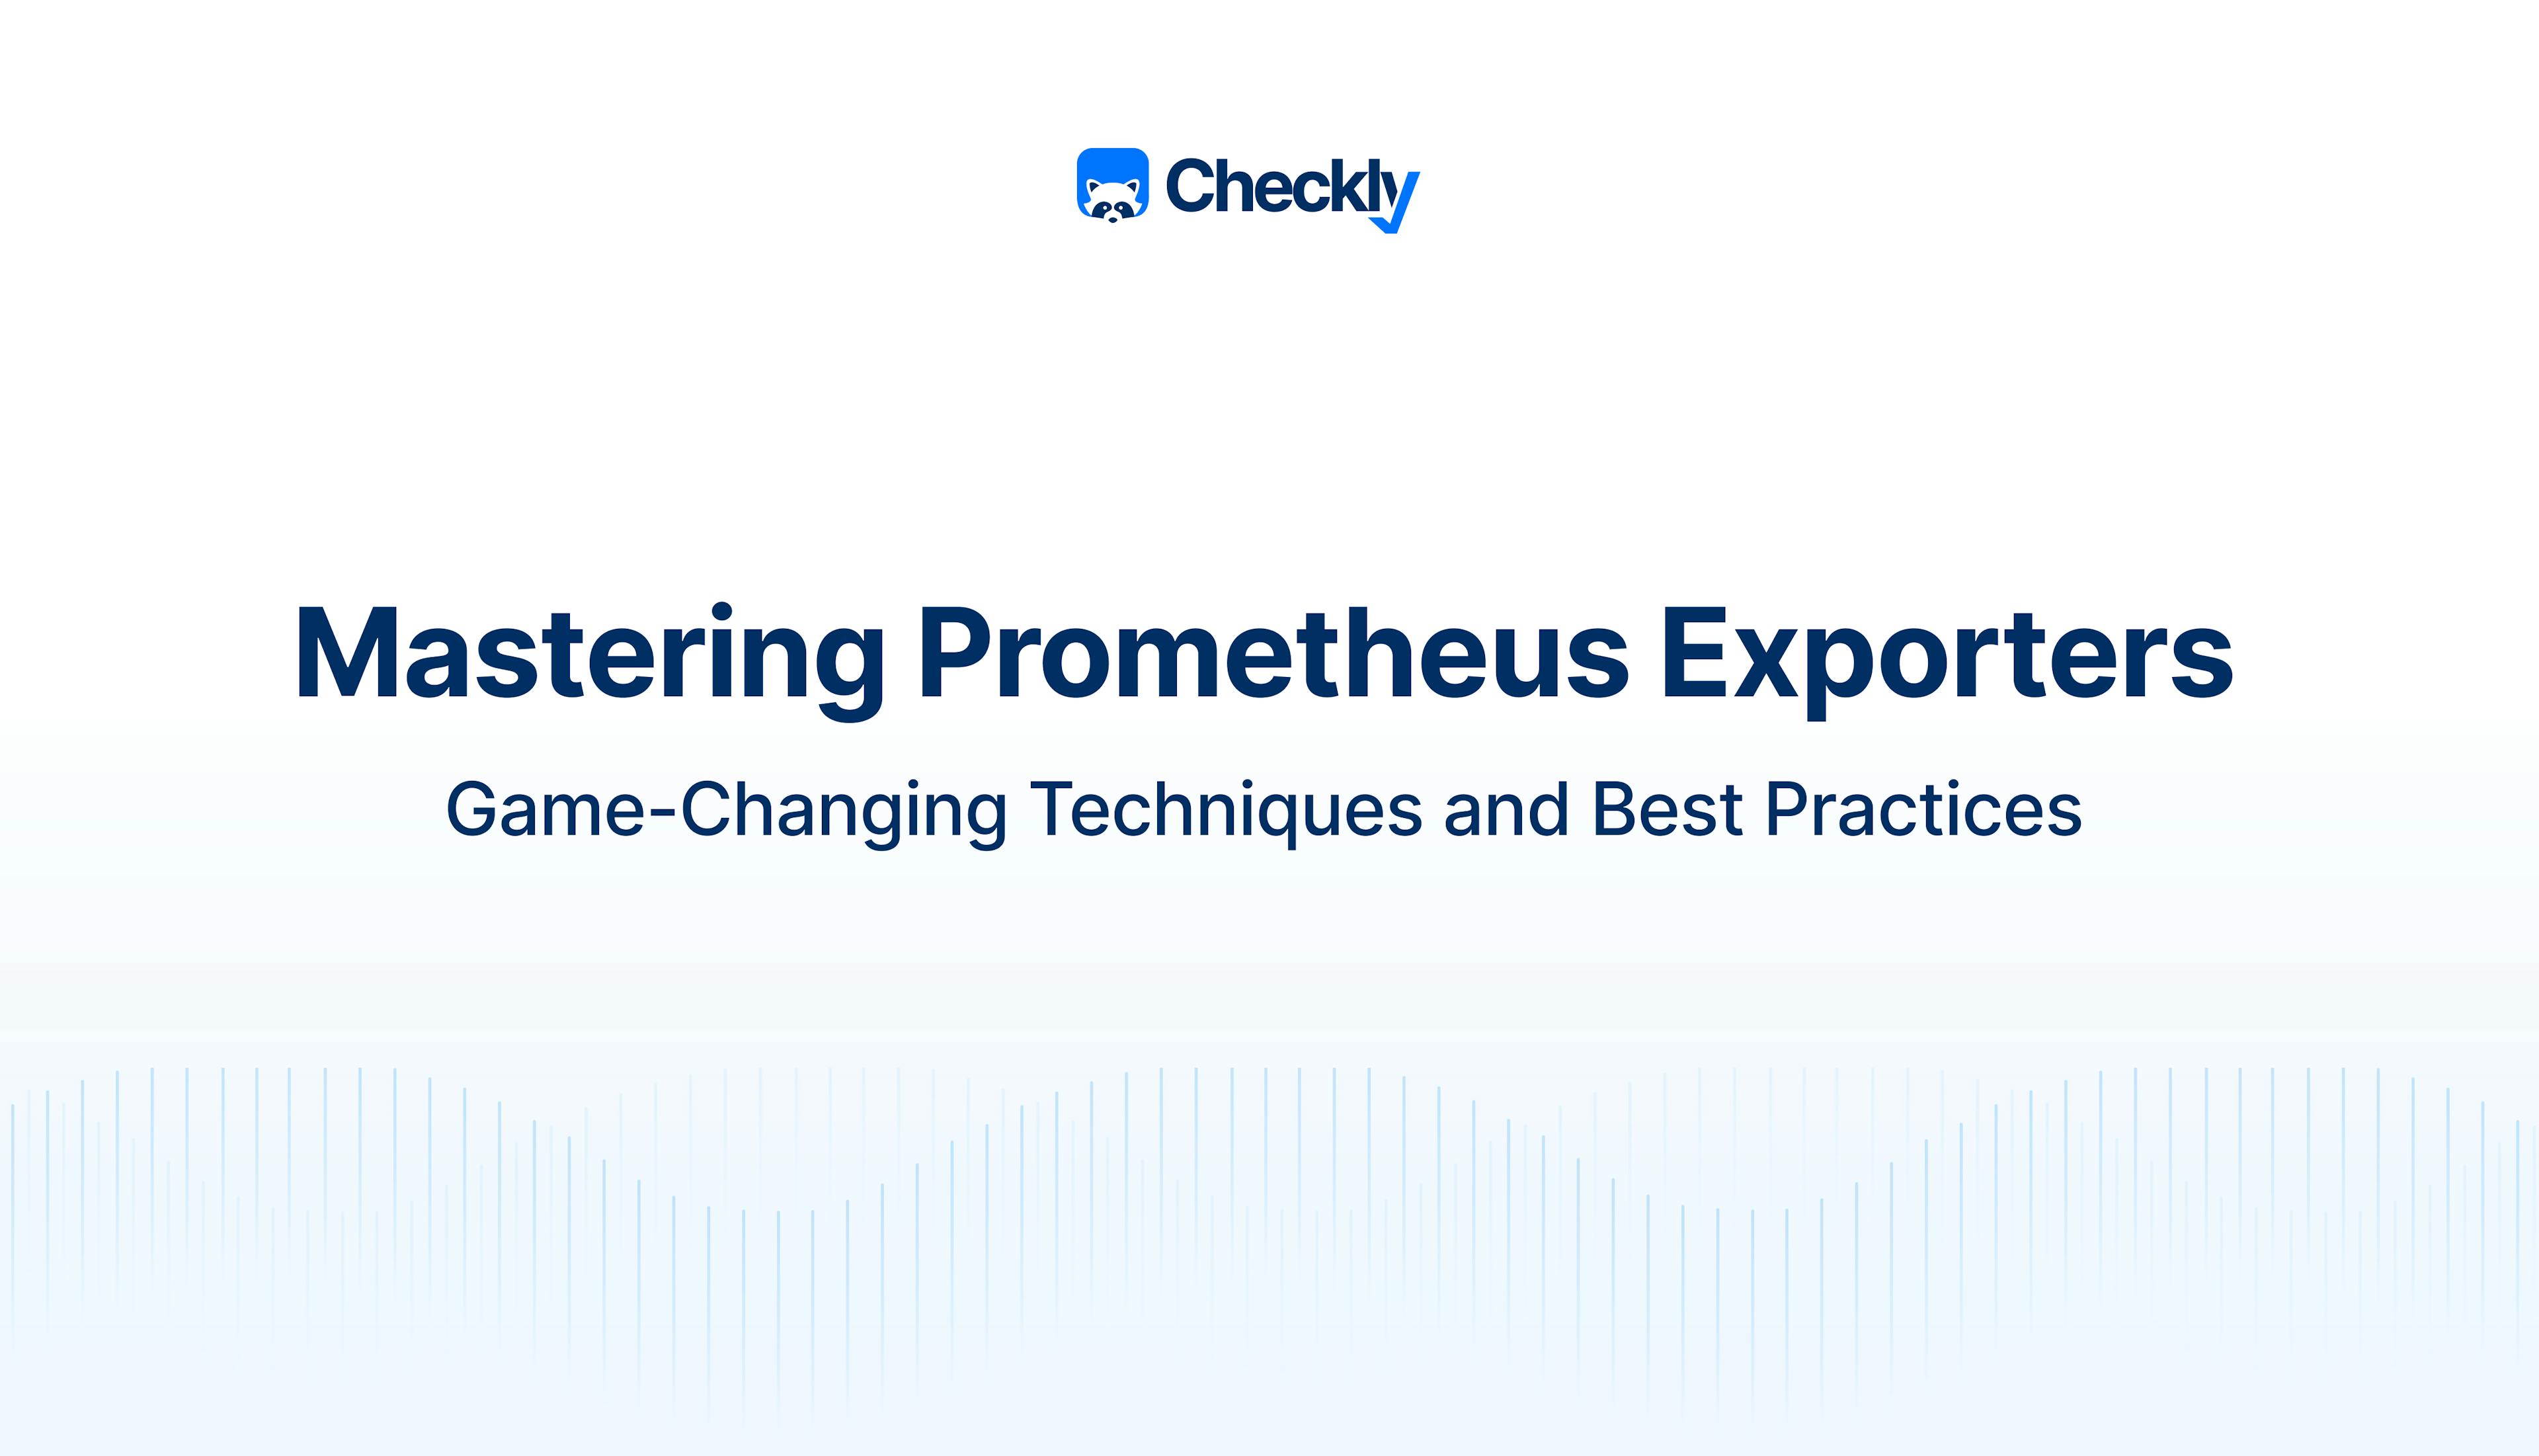 Prometheus exporters best practices